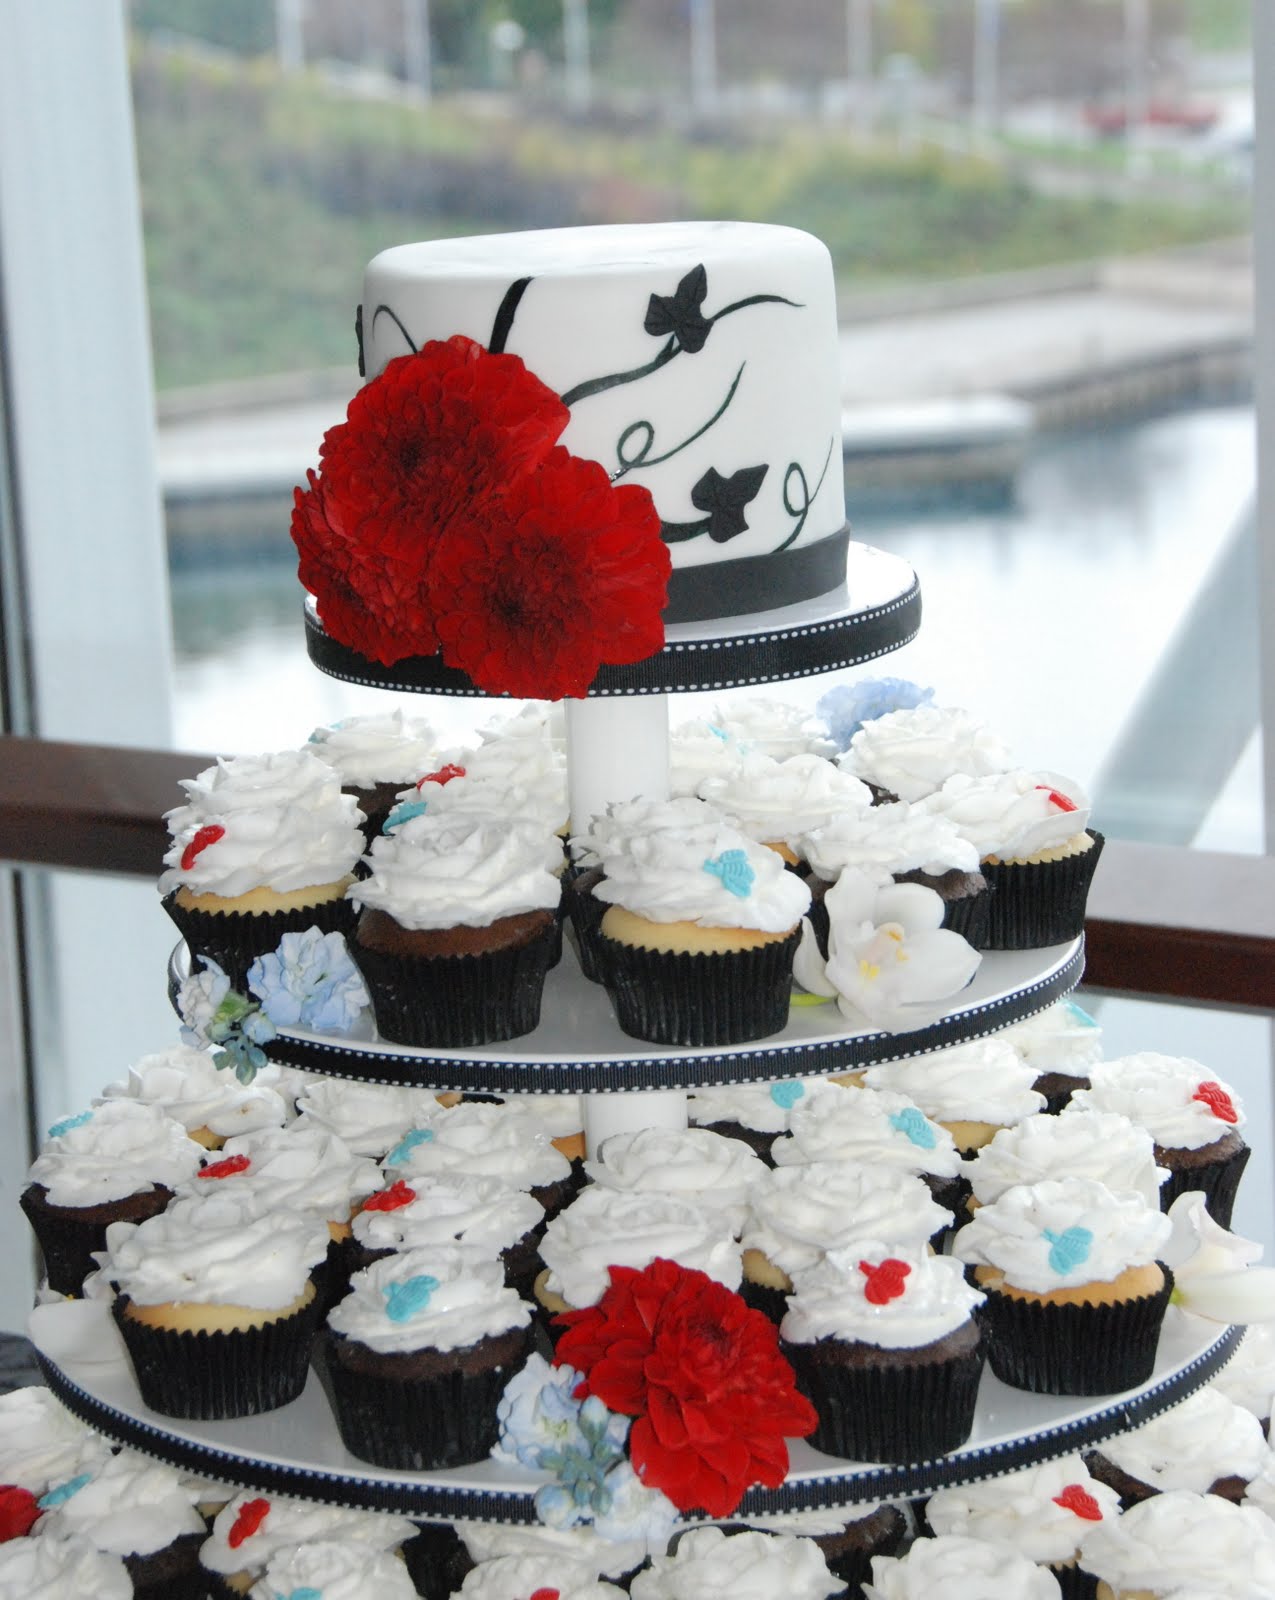 Black & white wedding cupcakes